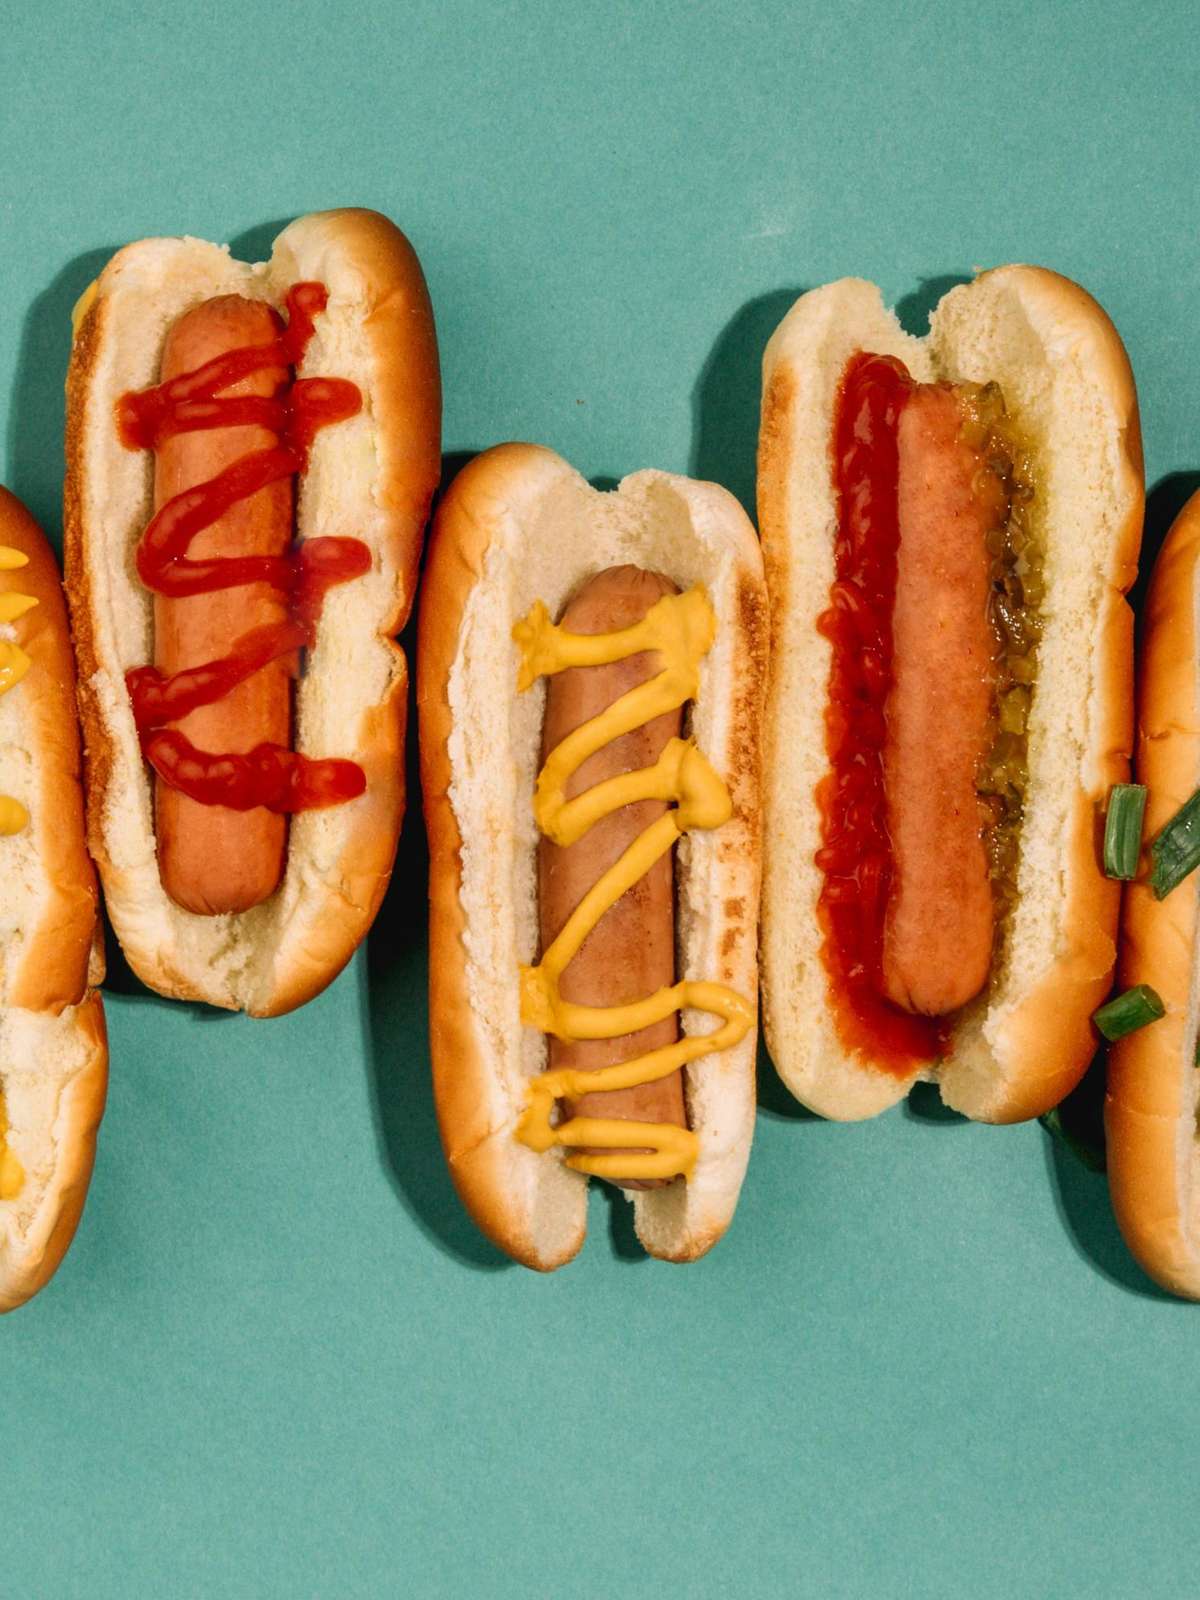 Choripan argentino é eleito melhor hot dog por site de gastronomia